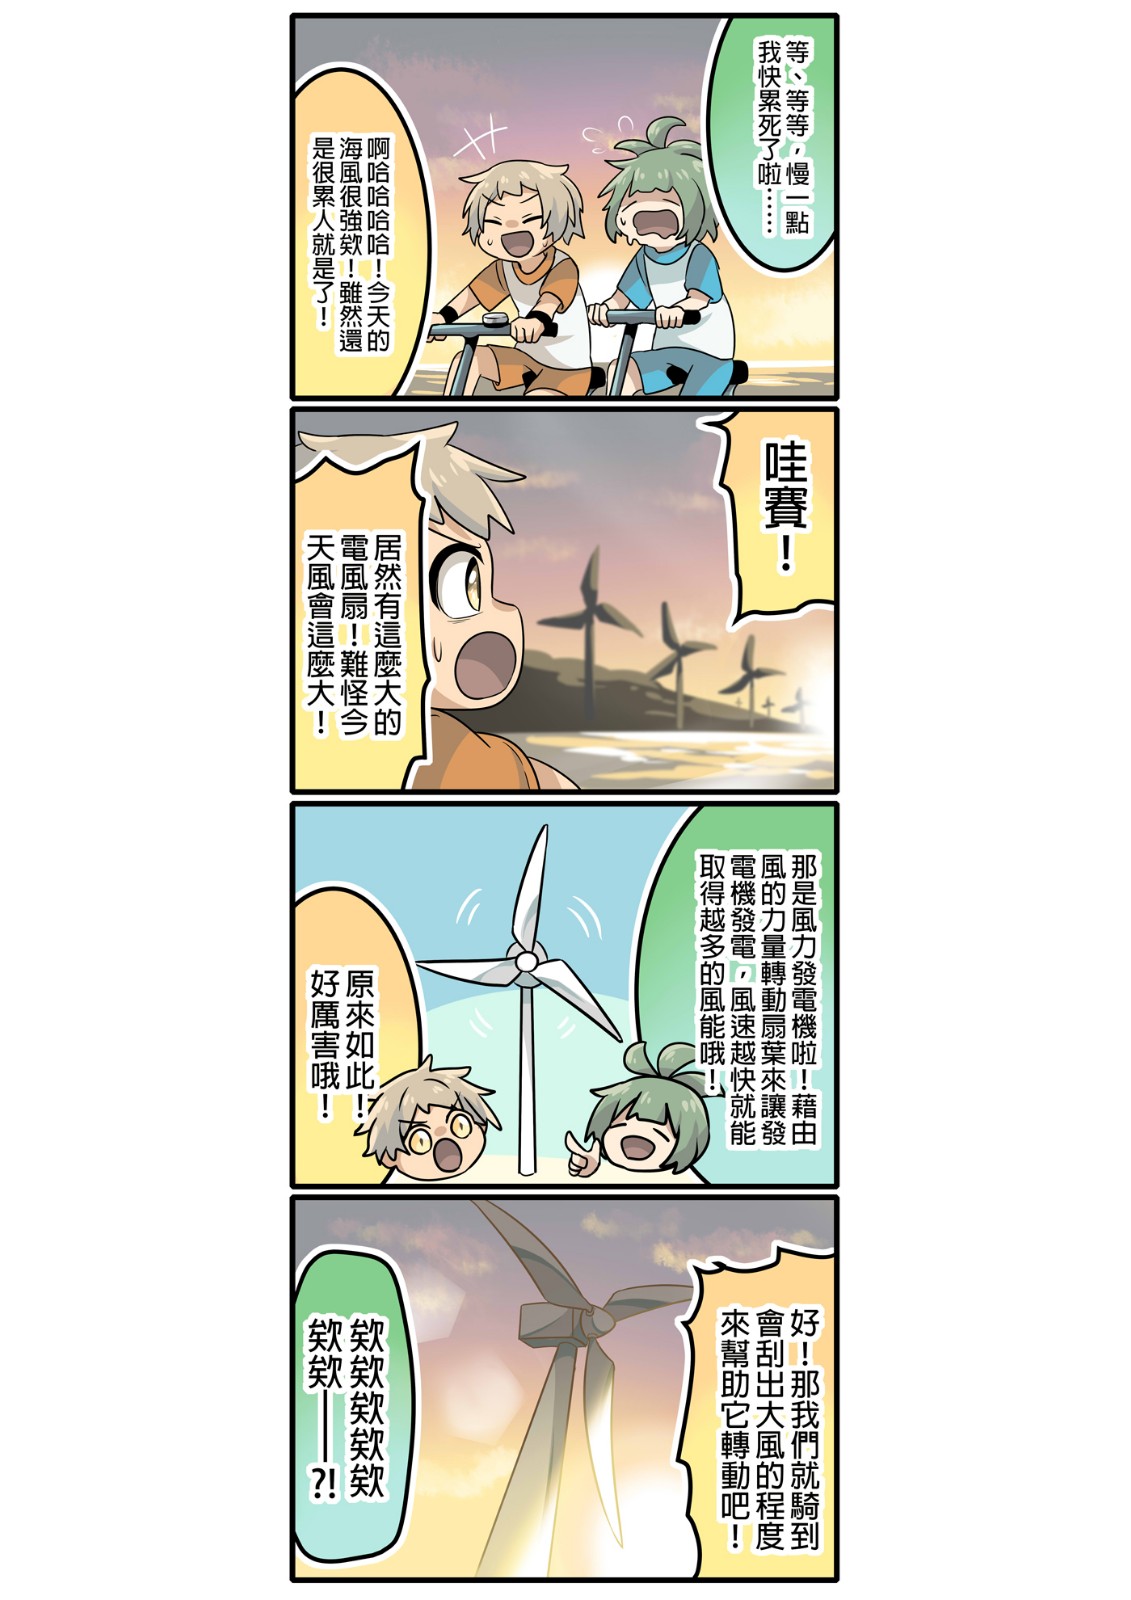 <b>學生組金賞</b><br>
風力發電機!